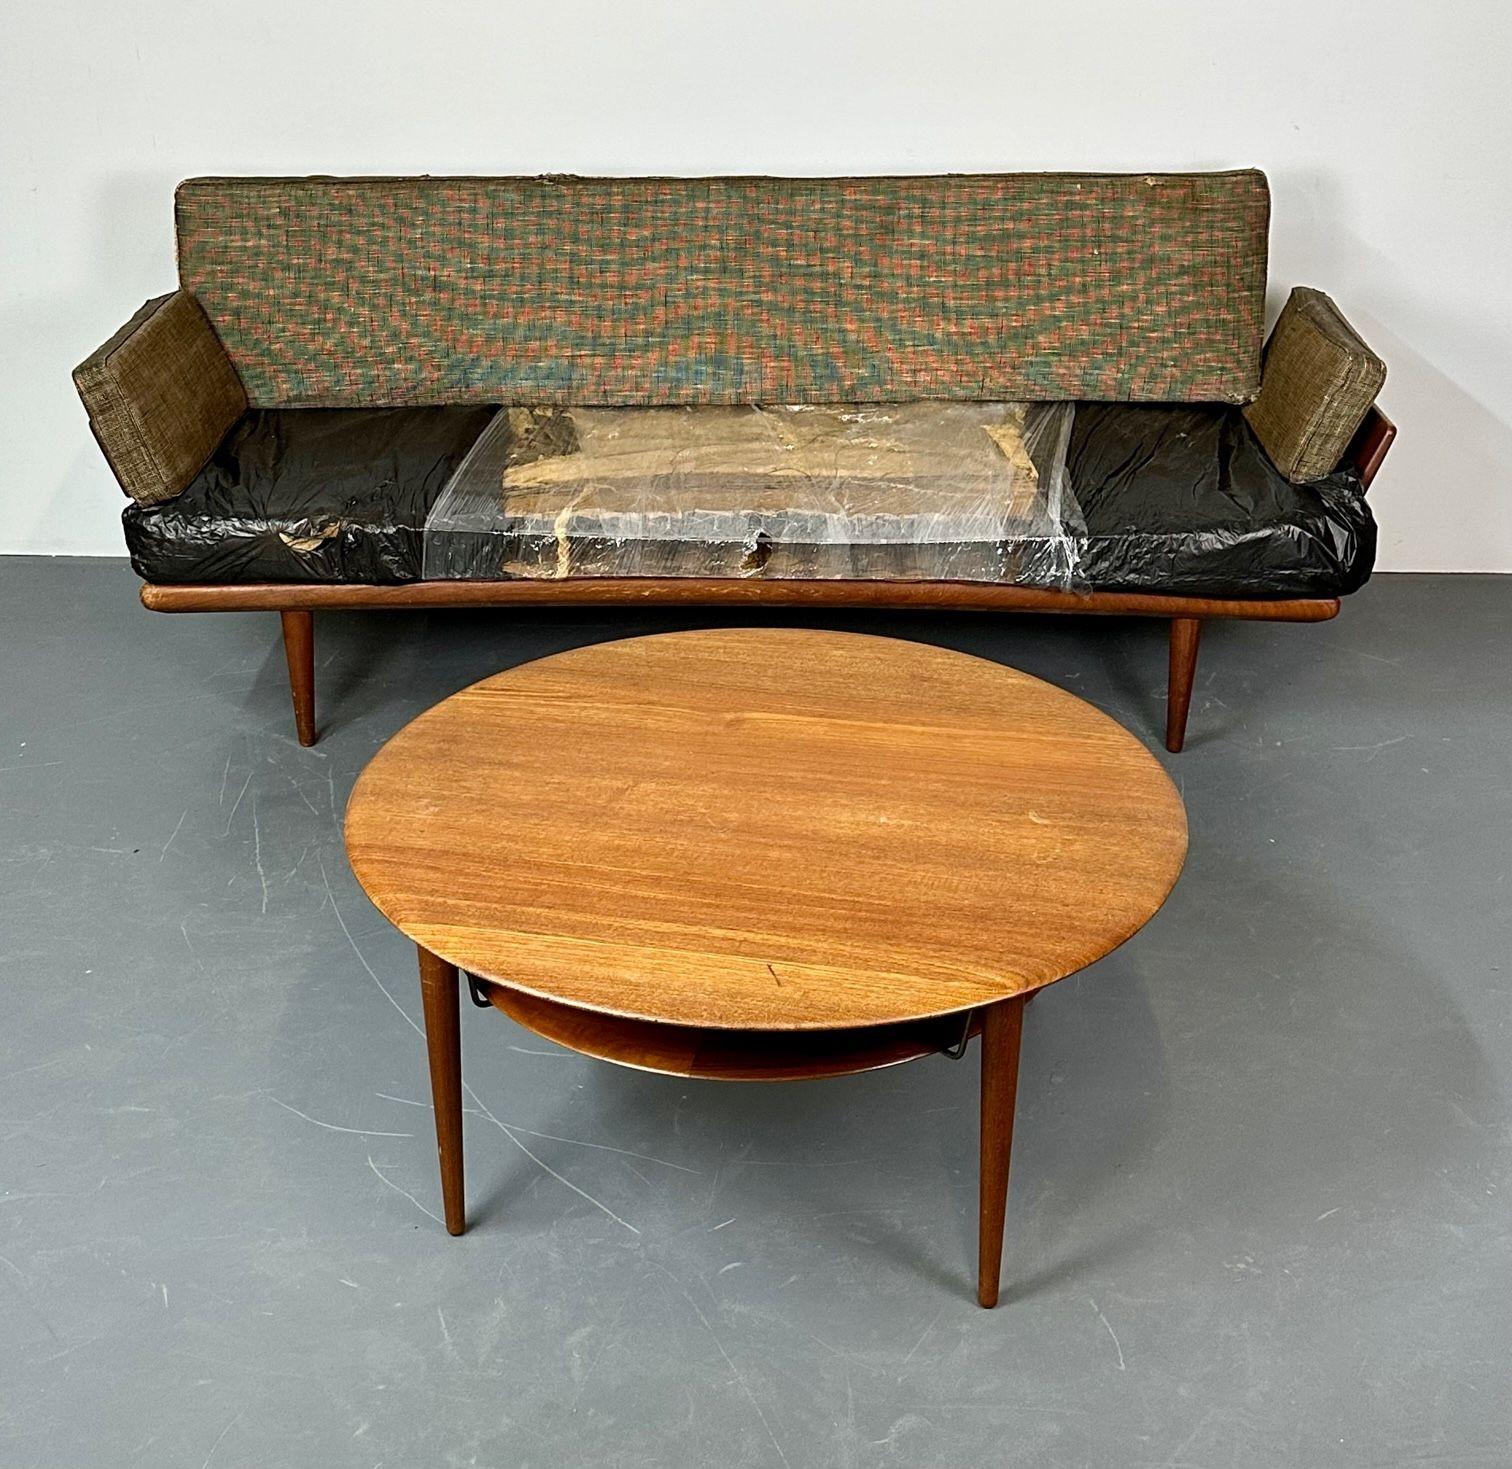 Modernes Mid-Century-Sofa von Peter Hvidt, Orla Molgaard für John Stuart, 1960er Jahre (Mitte des 20. Jahrhunderts)